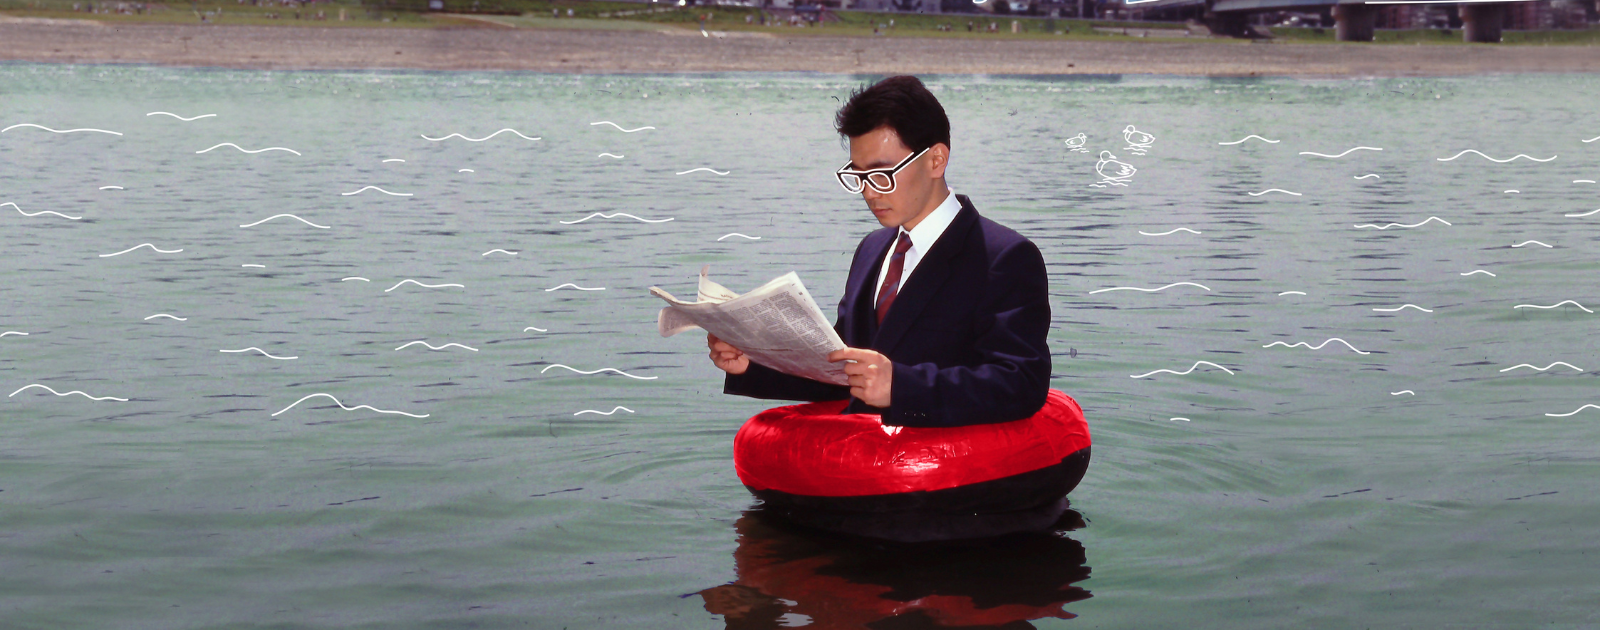 homme avec une bouée rouge sur l'eau qui lit le journal